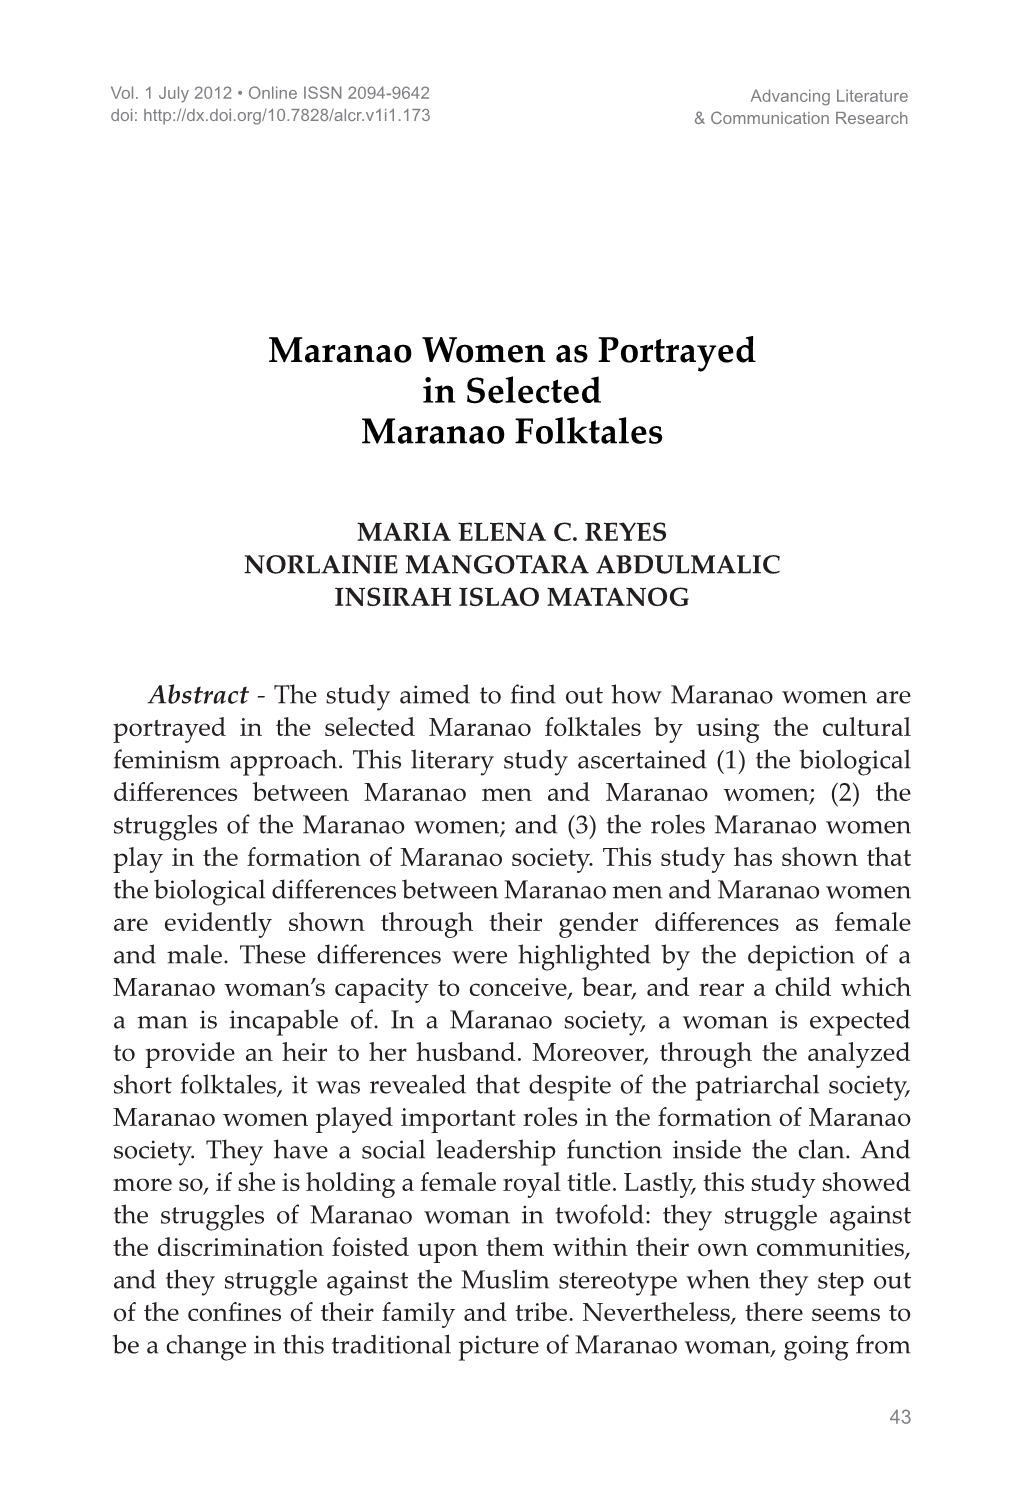 Maranao Women As Portrayed in Selected Maranao Folktales